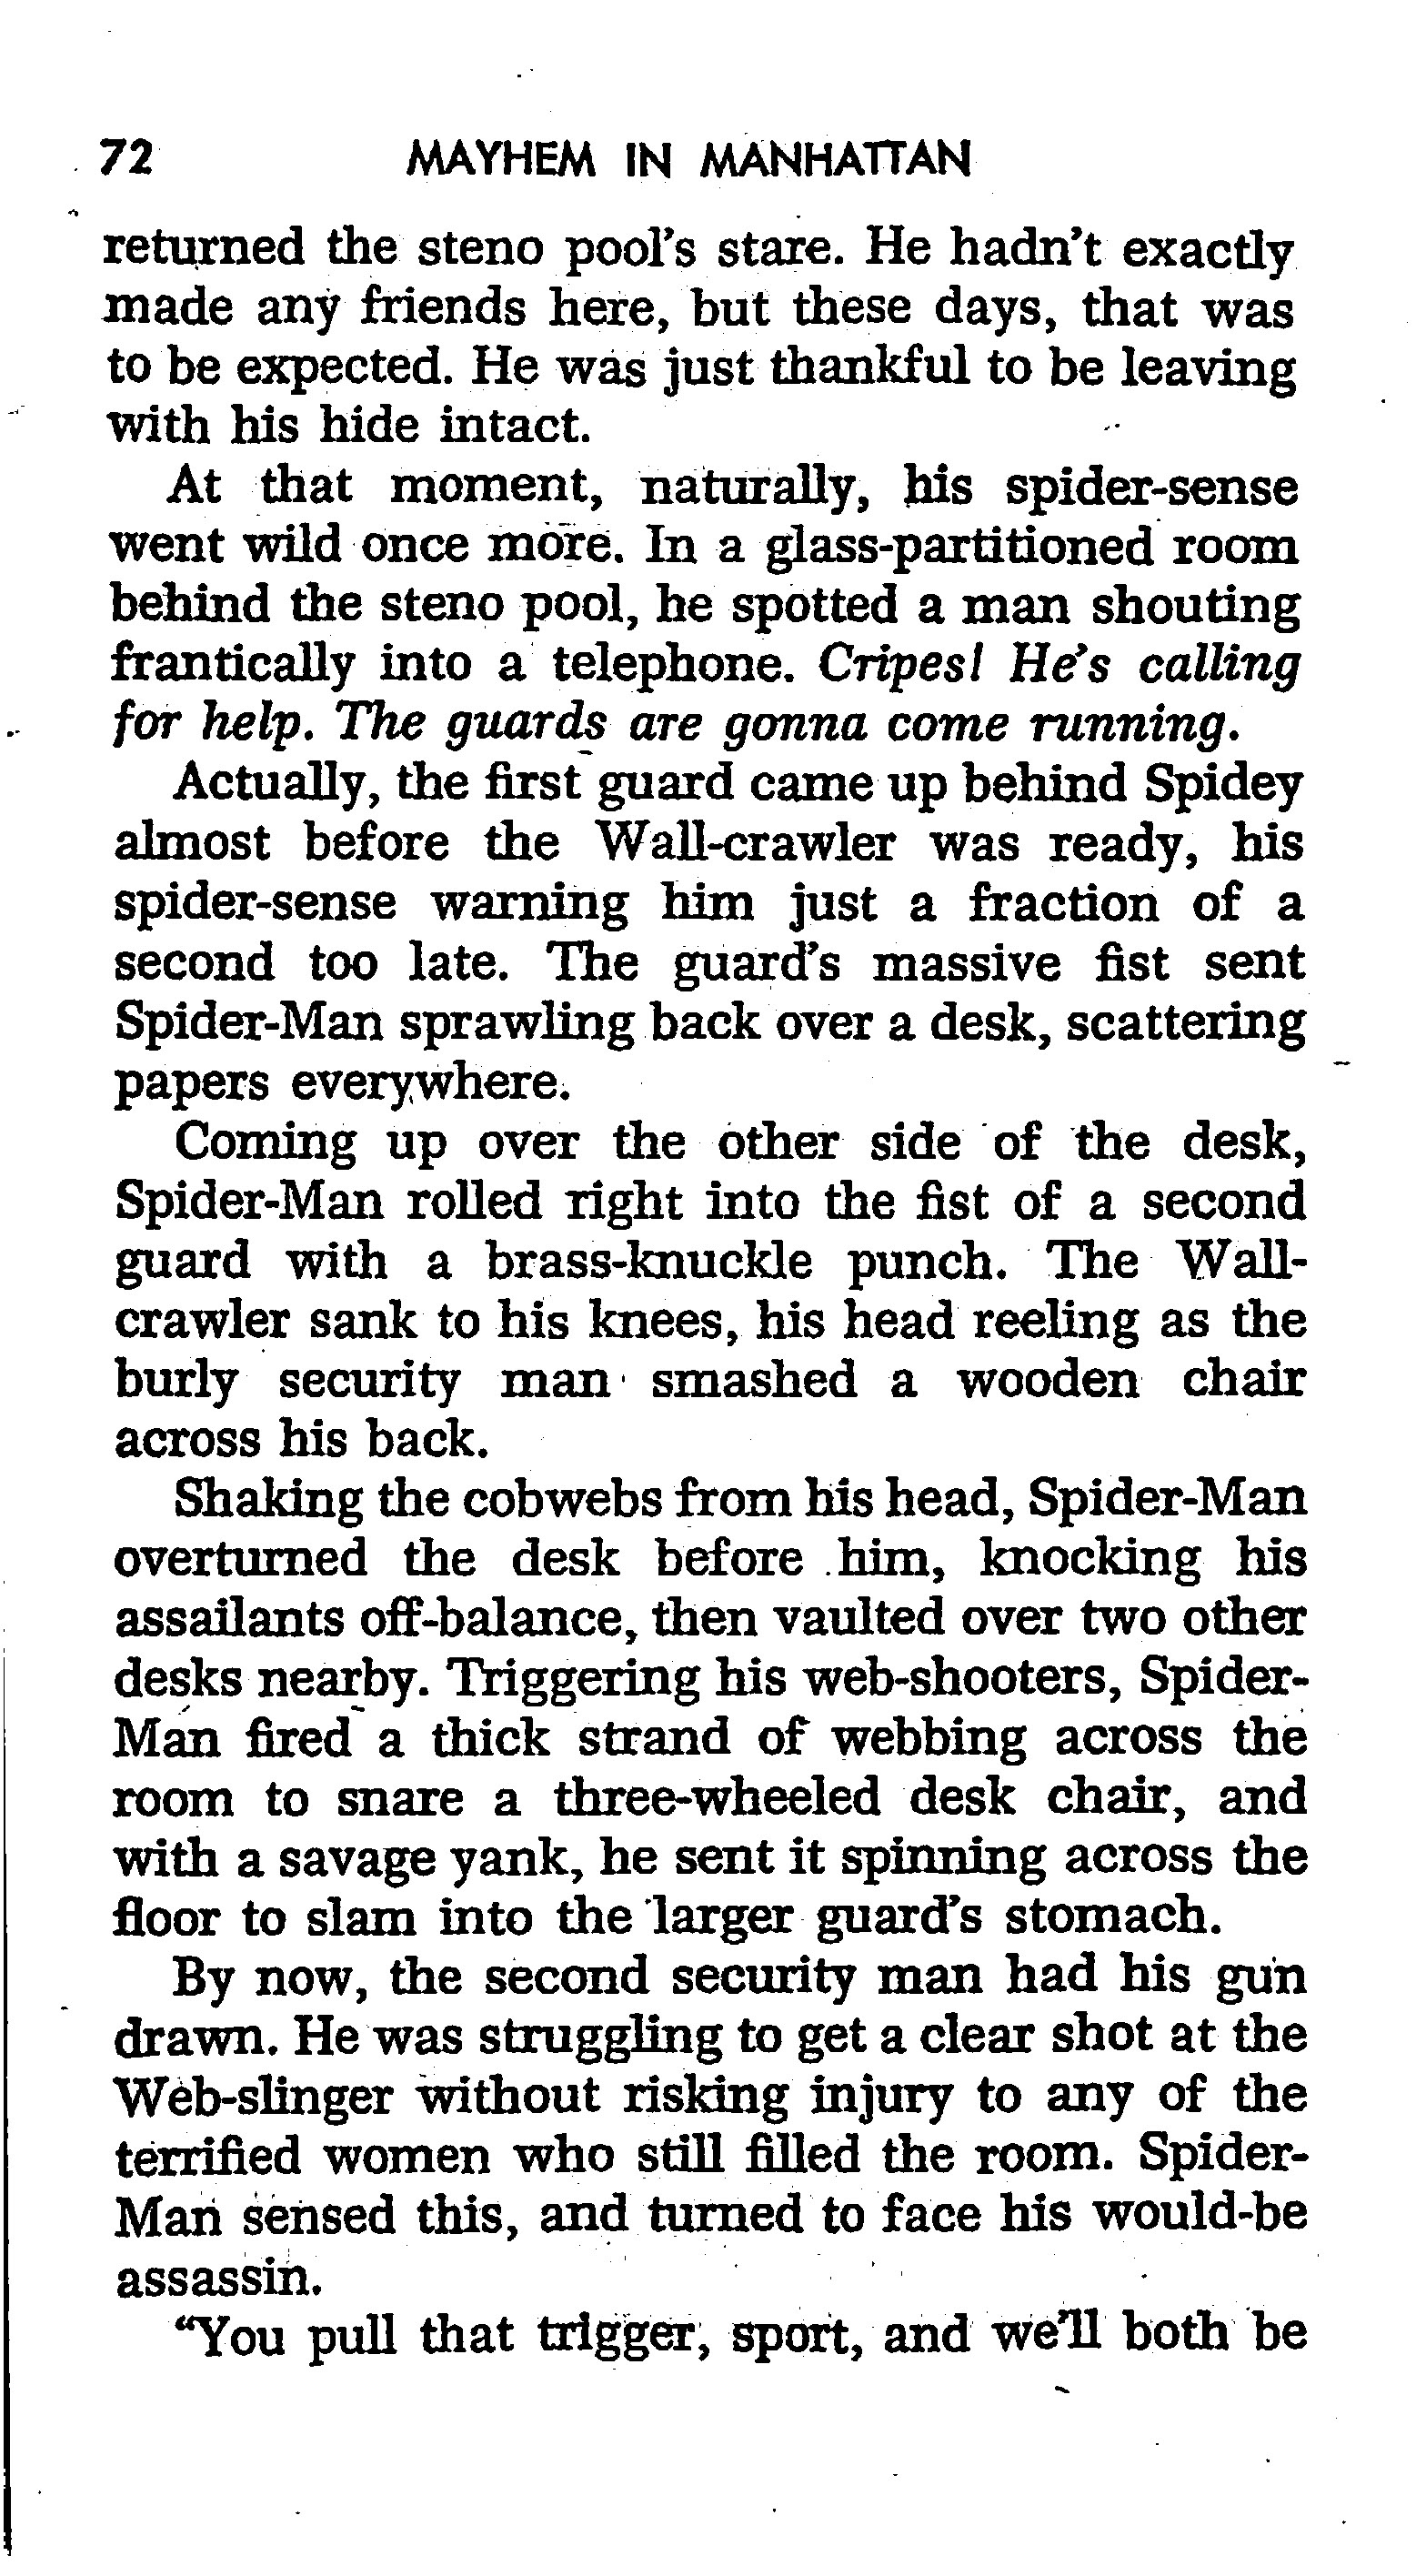 Read online The Amazing Spider-Man: Mayhem in Manhattan comic -  Issue # TPB (Part 1) - 73